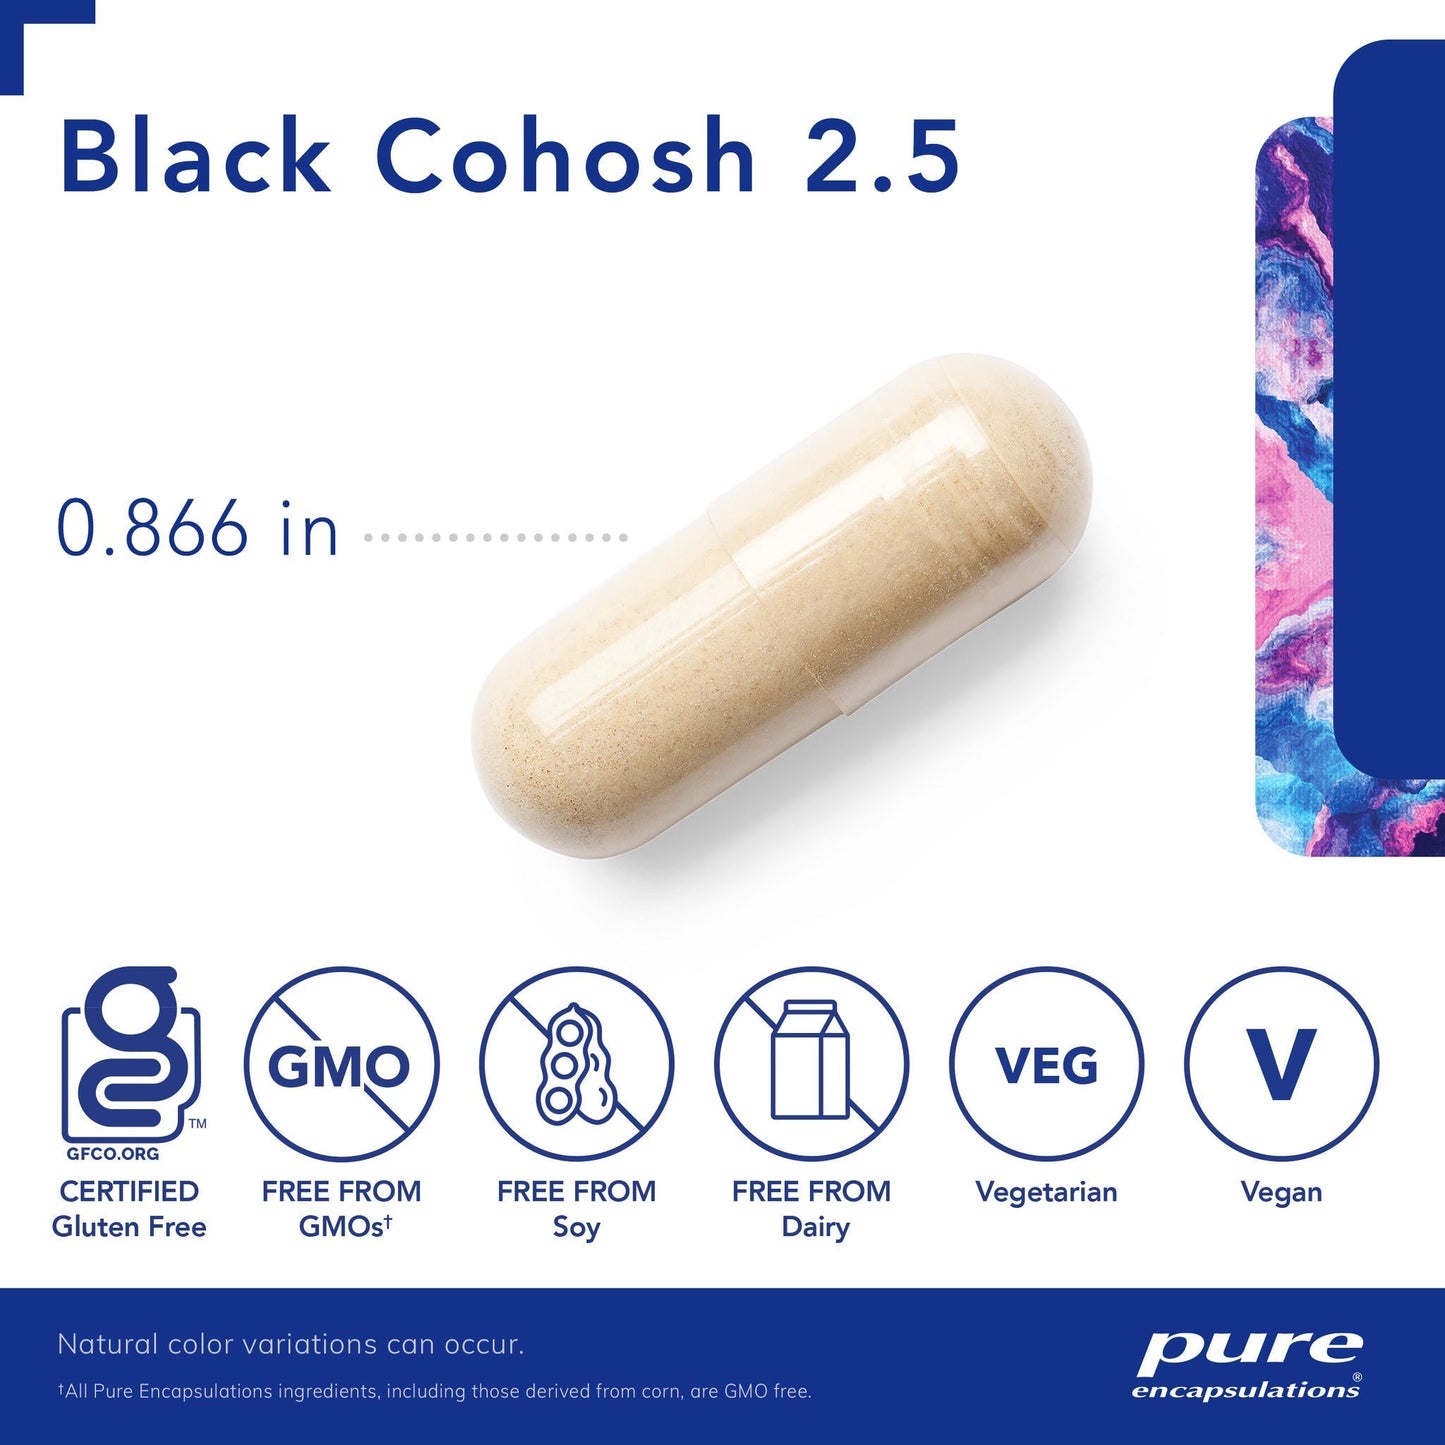 Black Cohosh 2.5